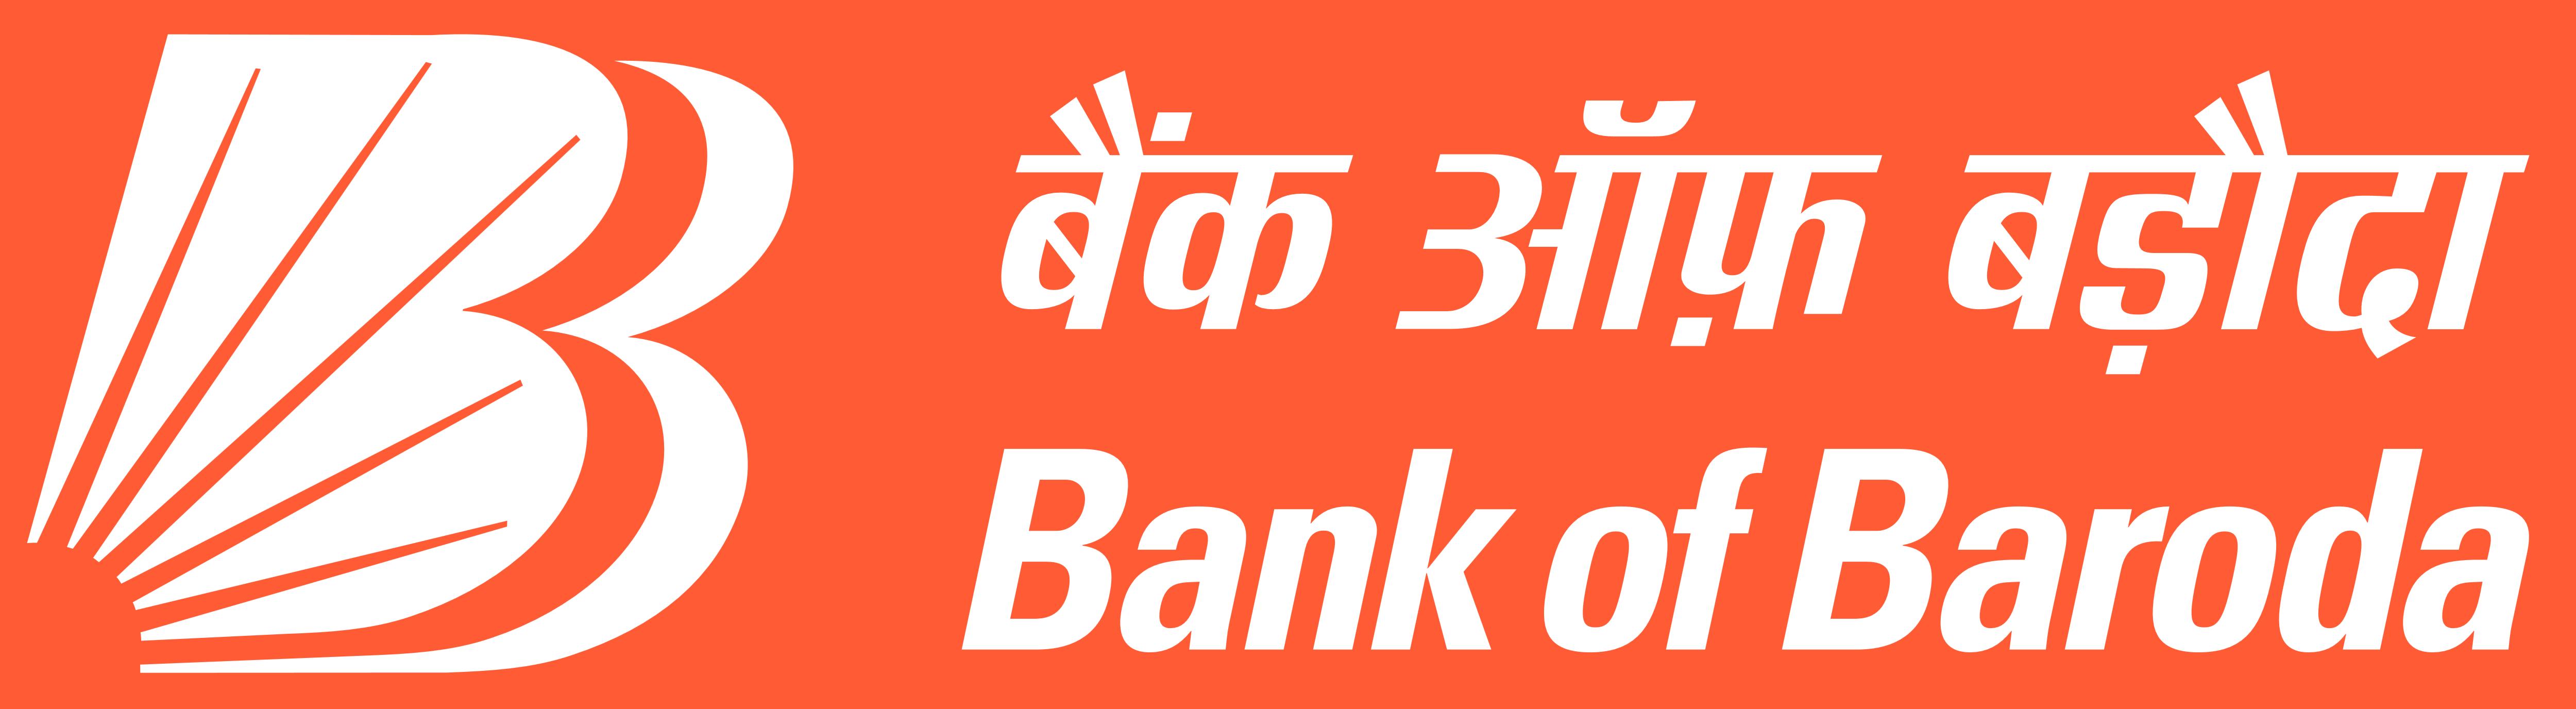 Orange and Red Bank Logo - Bank of Baroda – Logos Download